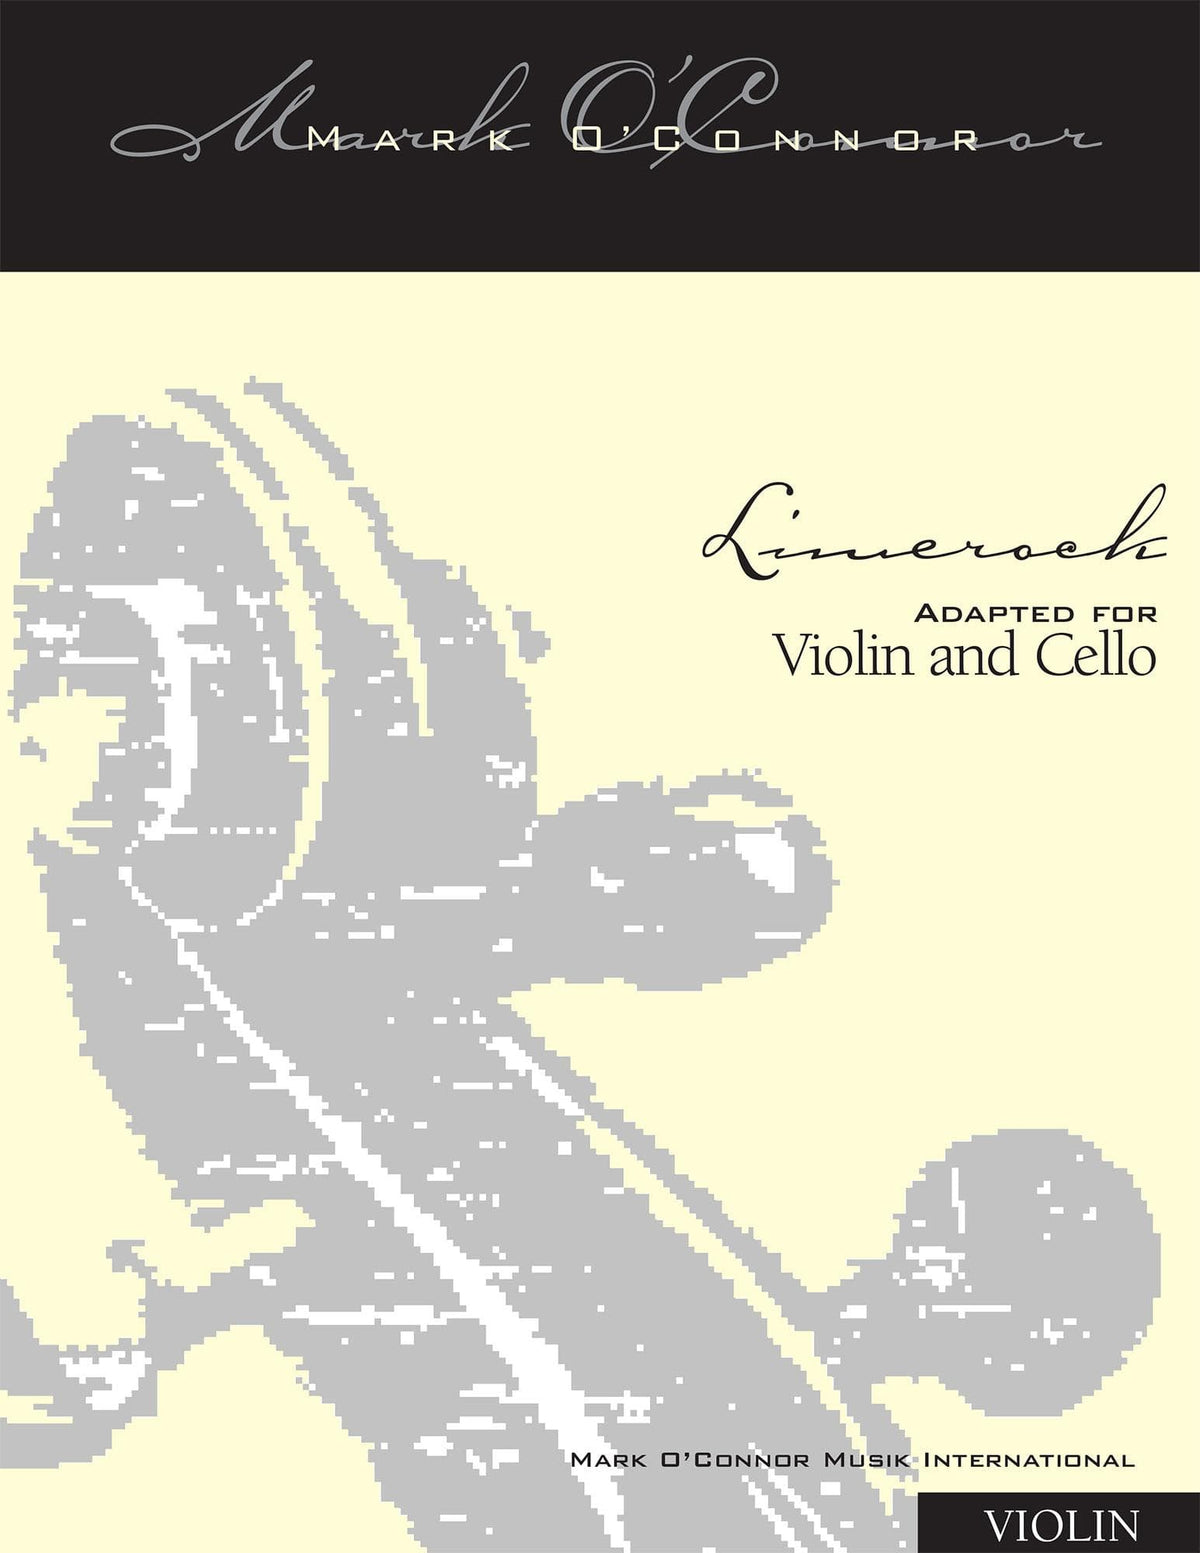 O'Connor, Mark - Limerock for Violin and Cello - Violin - Digital Download